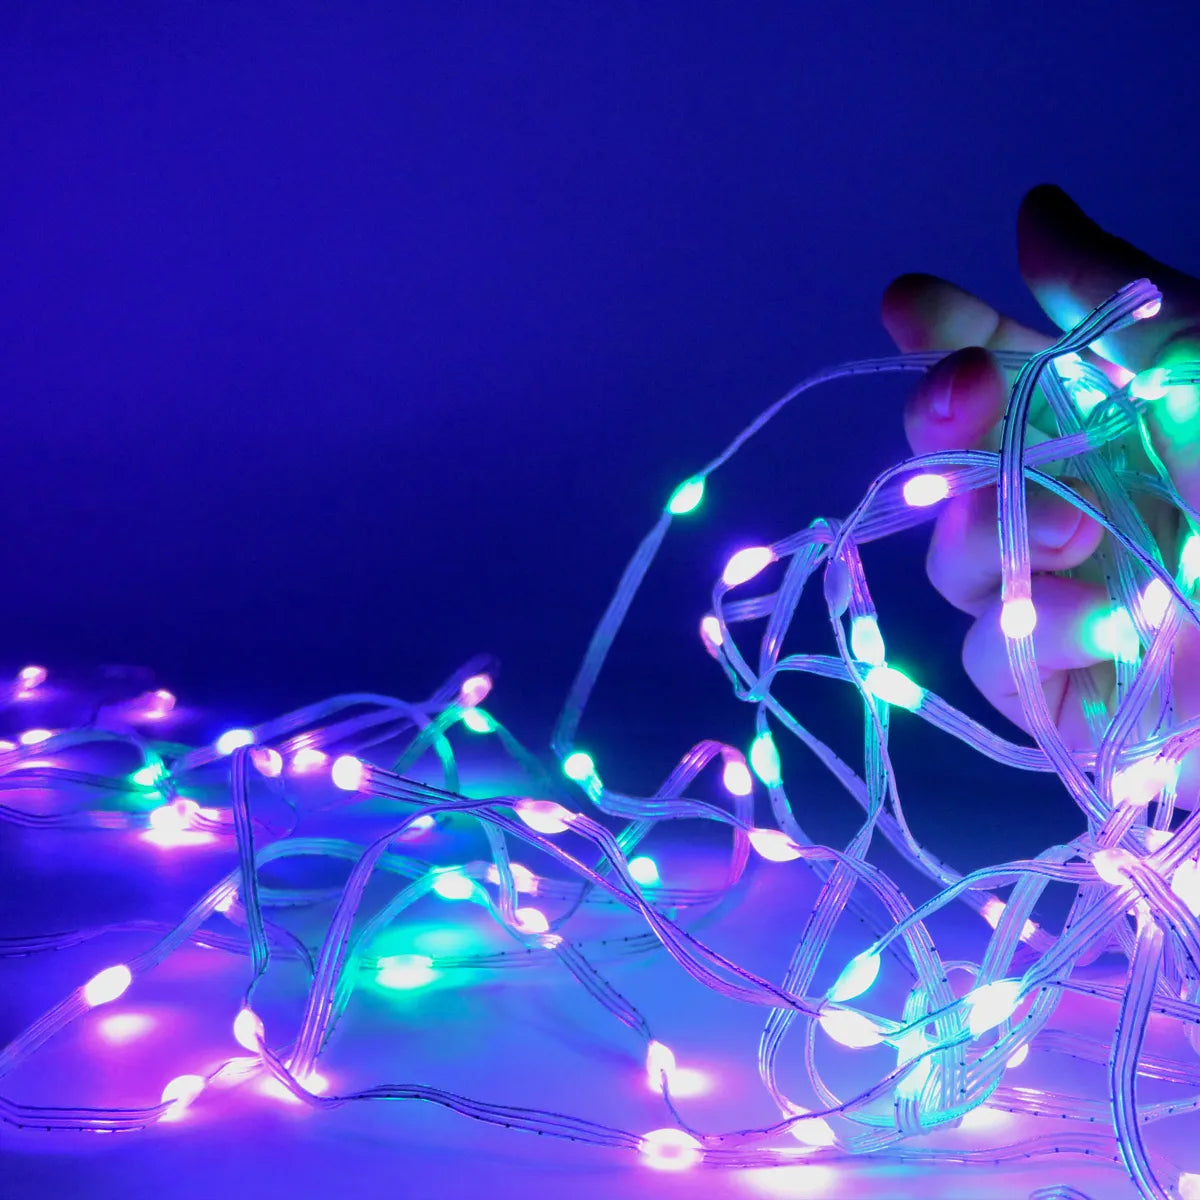 Intelligente LED-Weihnachtsbeleuchtung, Lichterkette RGB, 10 Meter, App-Steuerung, 5 Watt